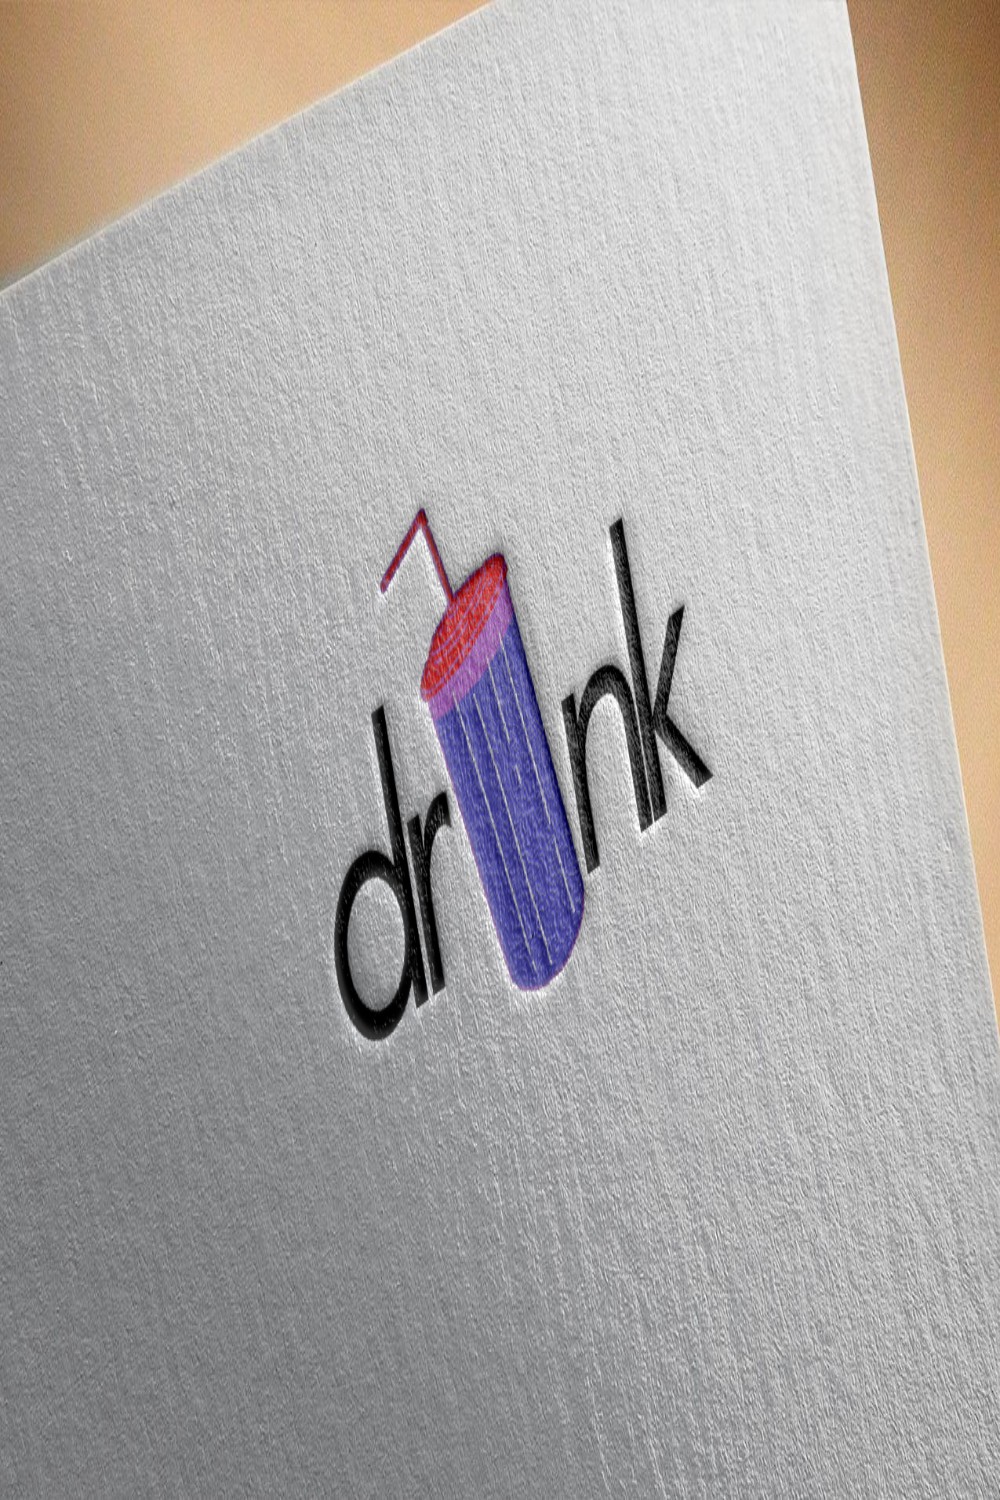 Drink Logo Design Pinterest image.